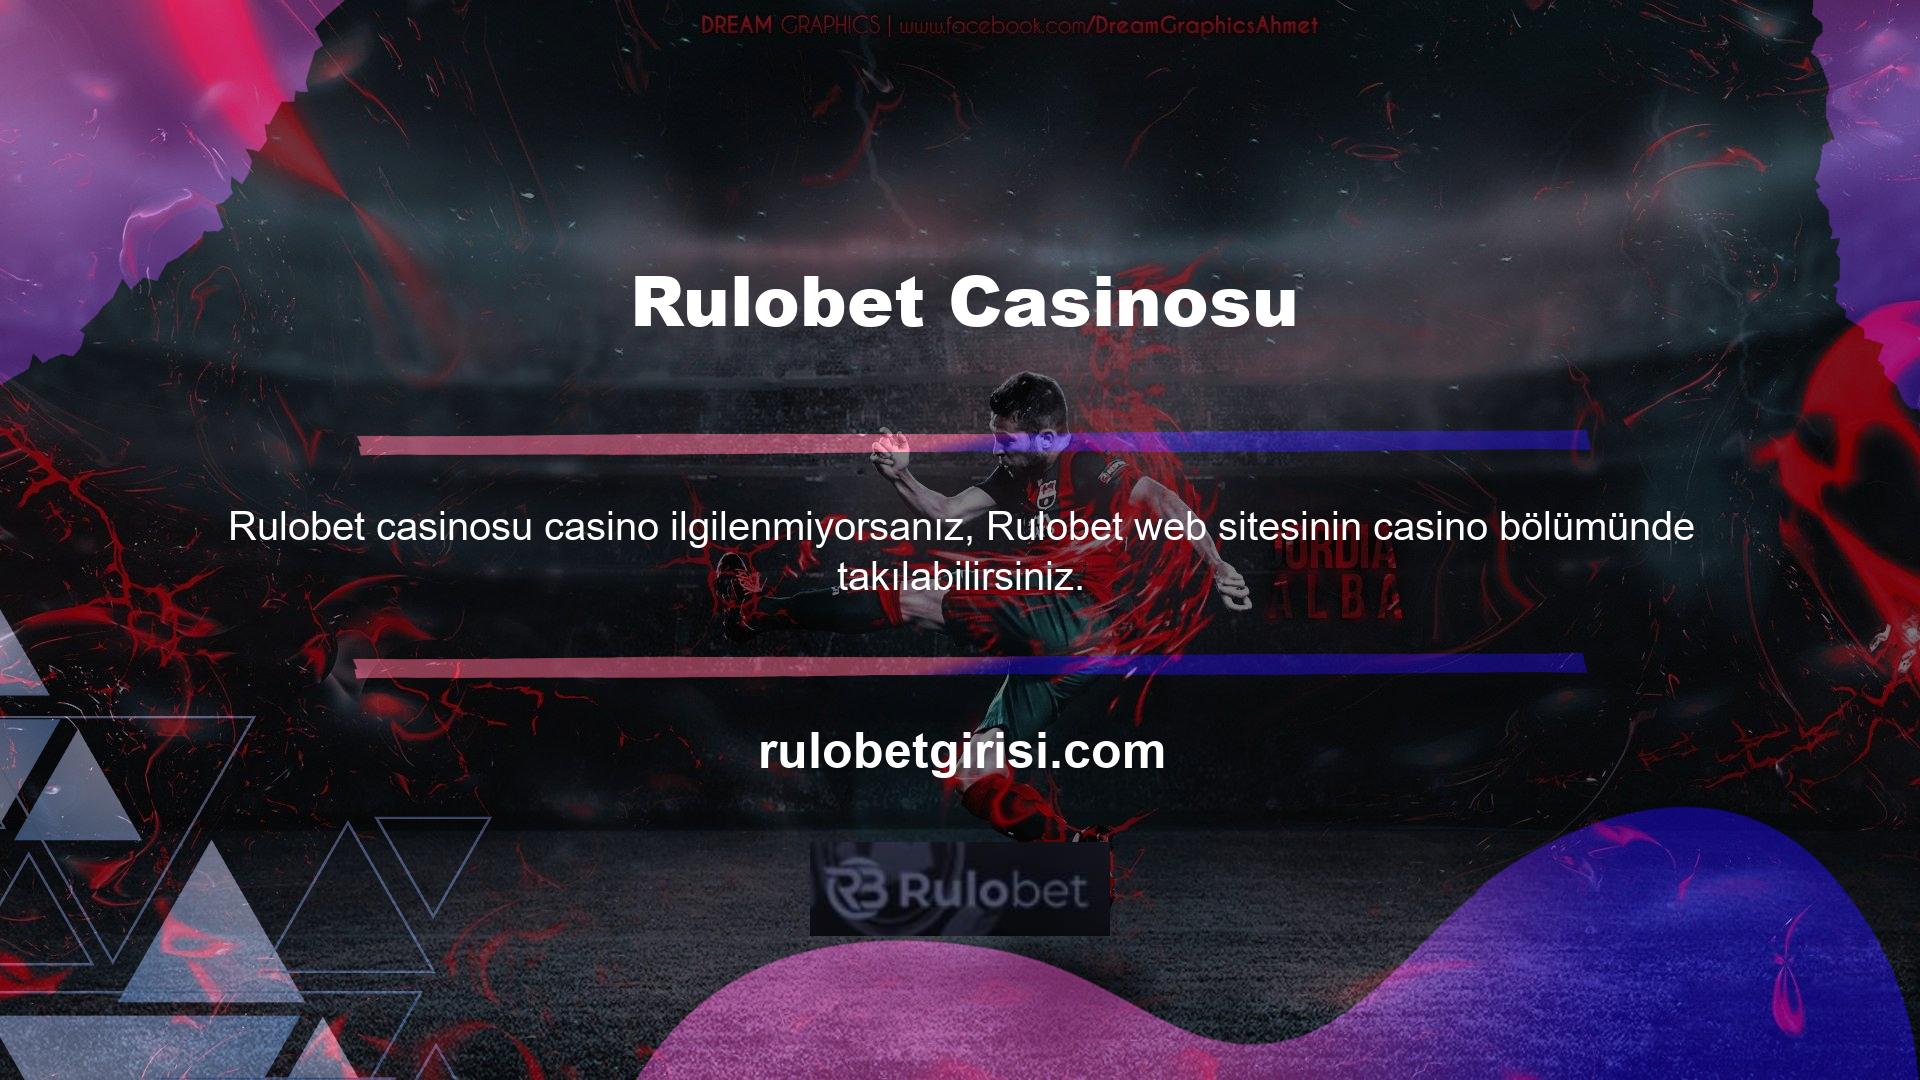 Casino bölümü farklı kategorilerde sunulmaktadır